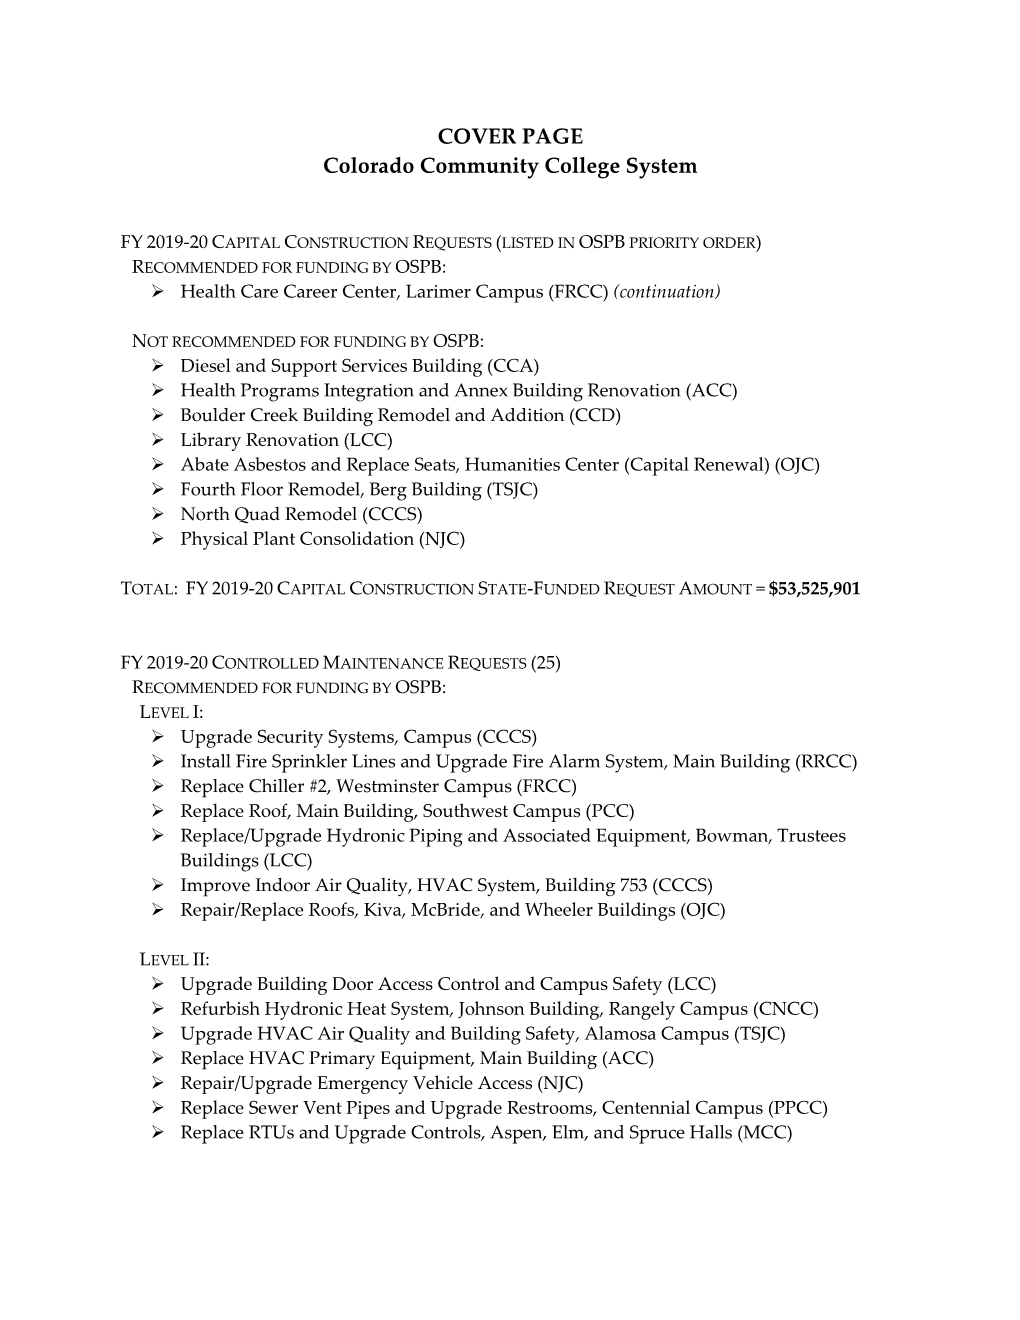 Colorado Community College System FY 2019-20